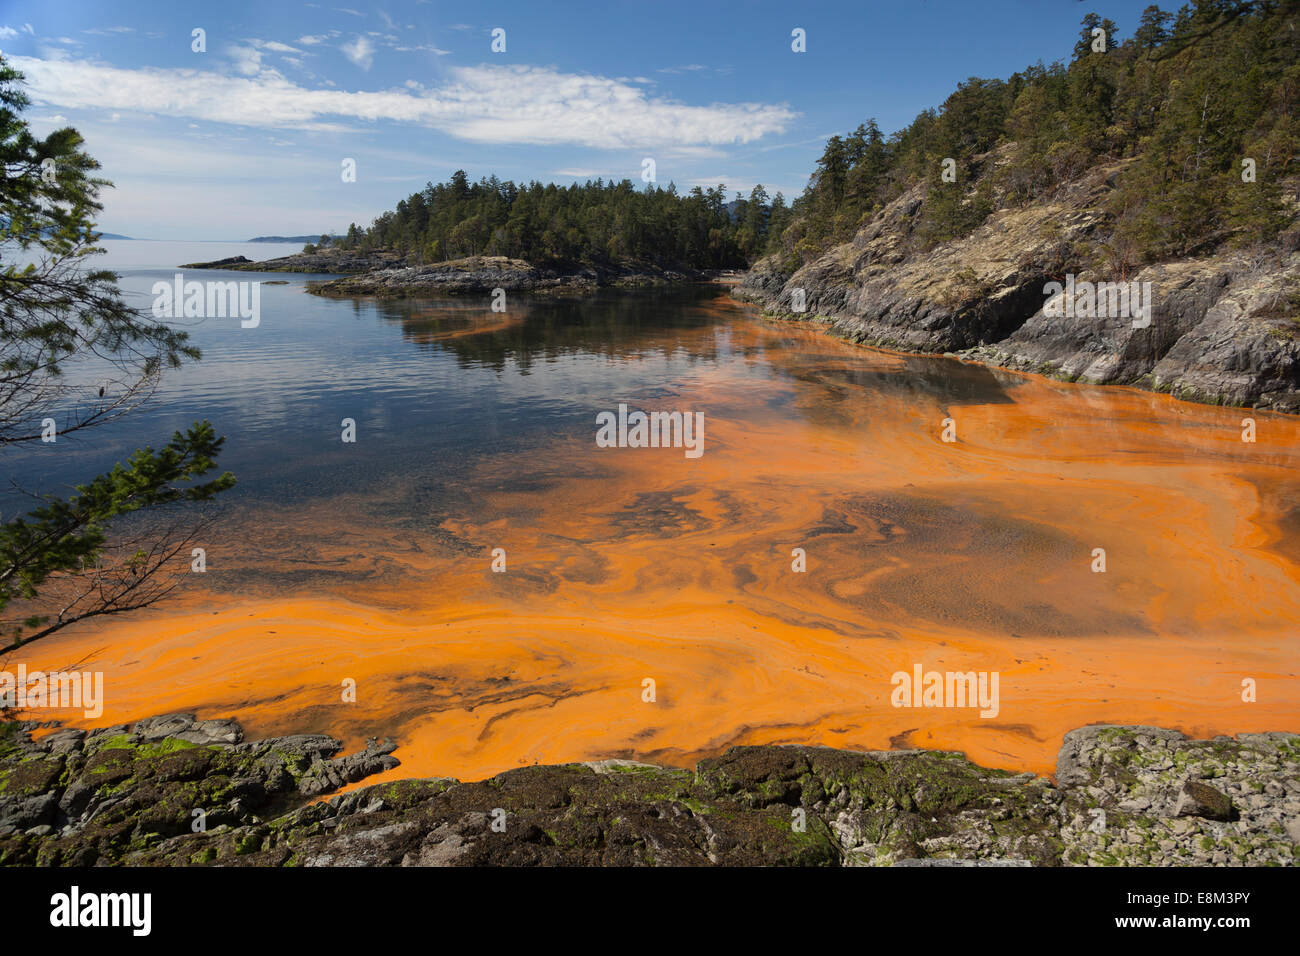 Fioritura algale sull'oceano. A Sechelt in British Columbia il Canada west coast una concentrazione di alghe rende l'acqua di colore arancione. Foto Stock